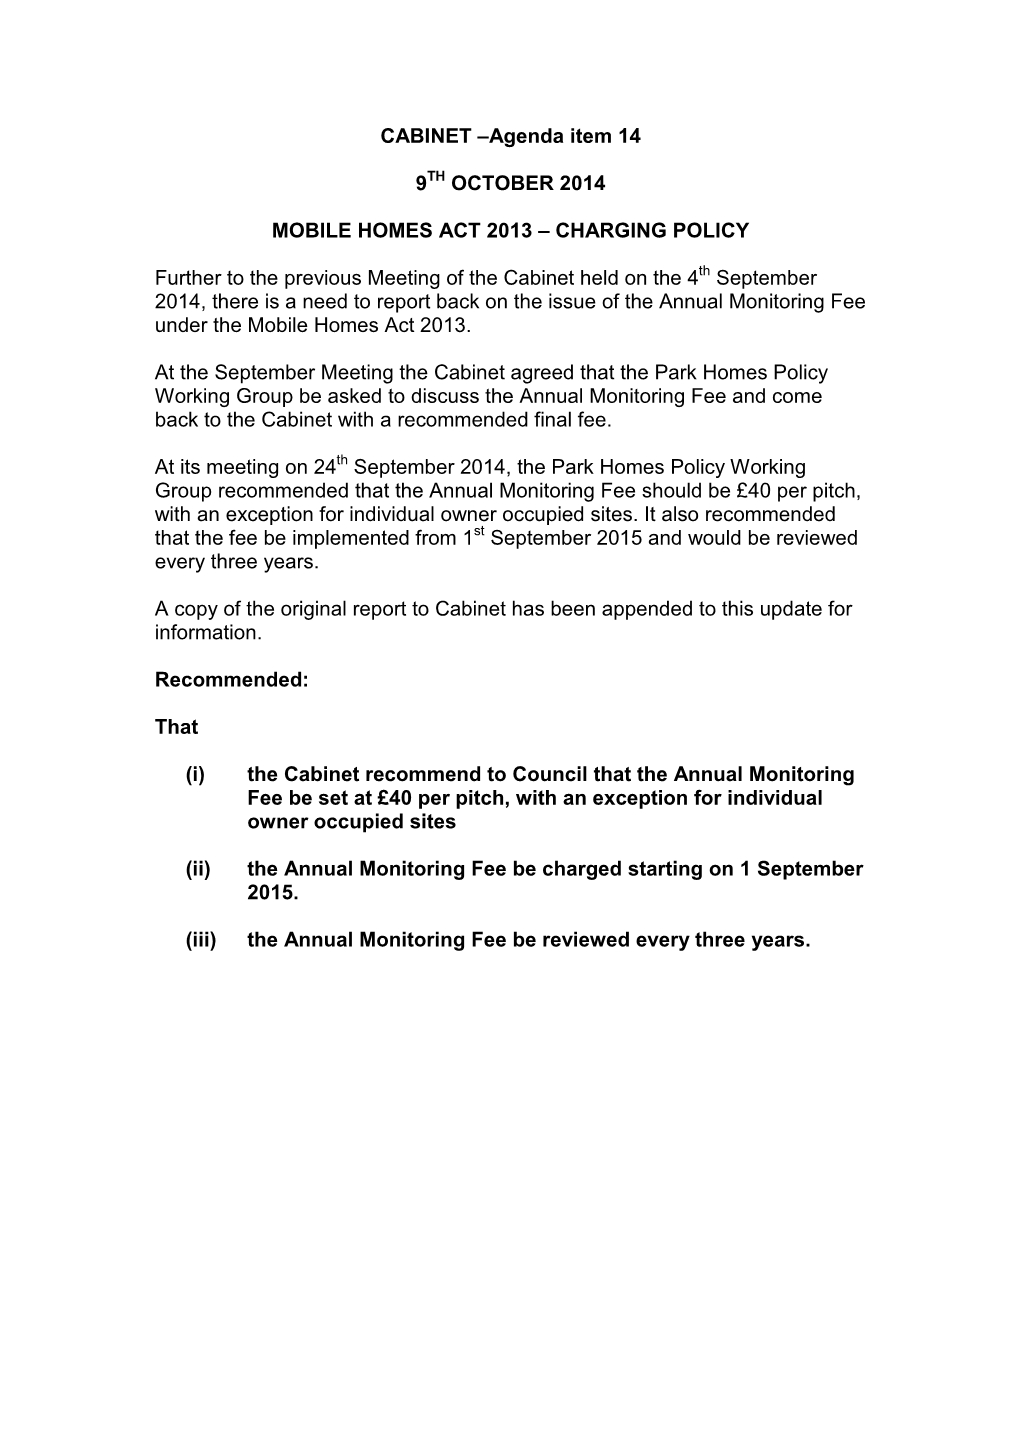 CABINET –Agenda Item 14 9 OCTOBER 2014 MOBILE HOMES